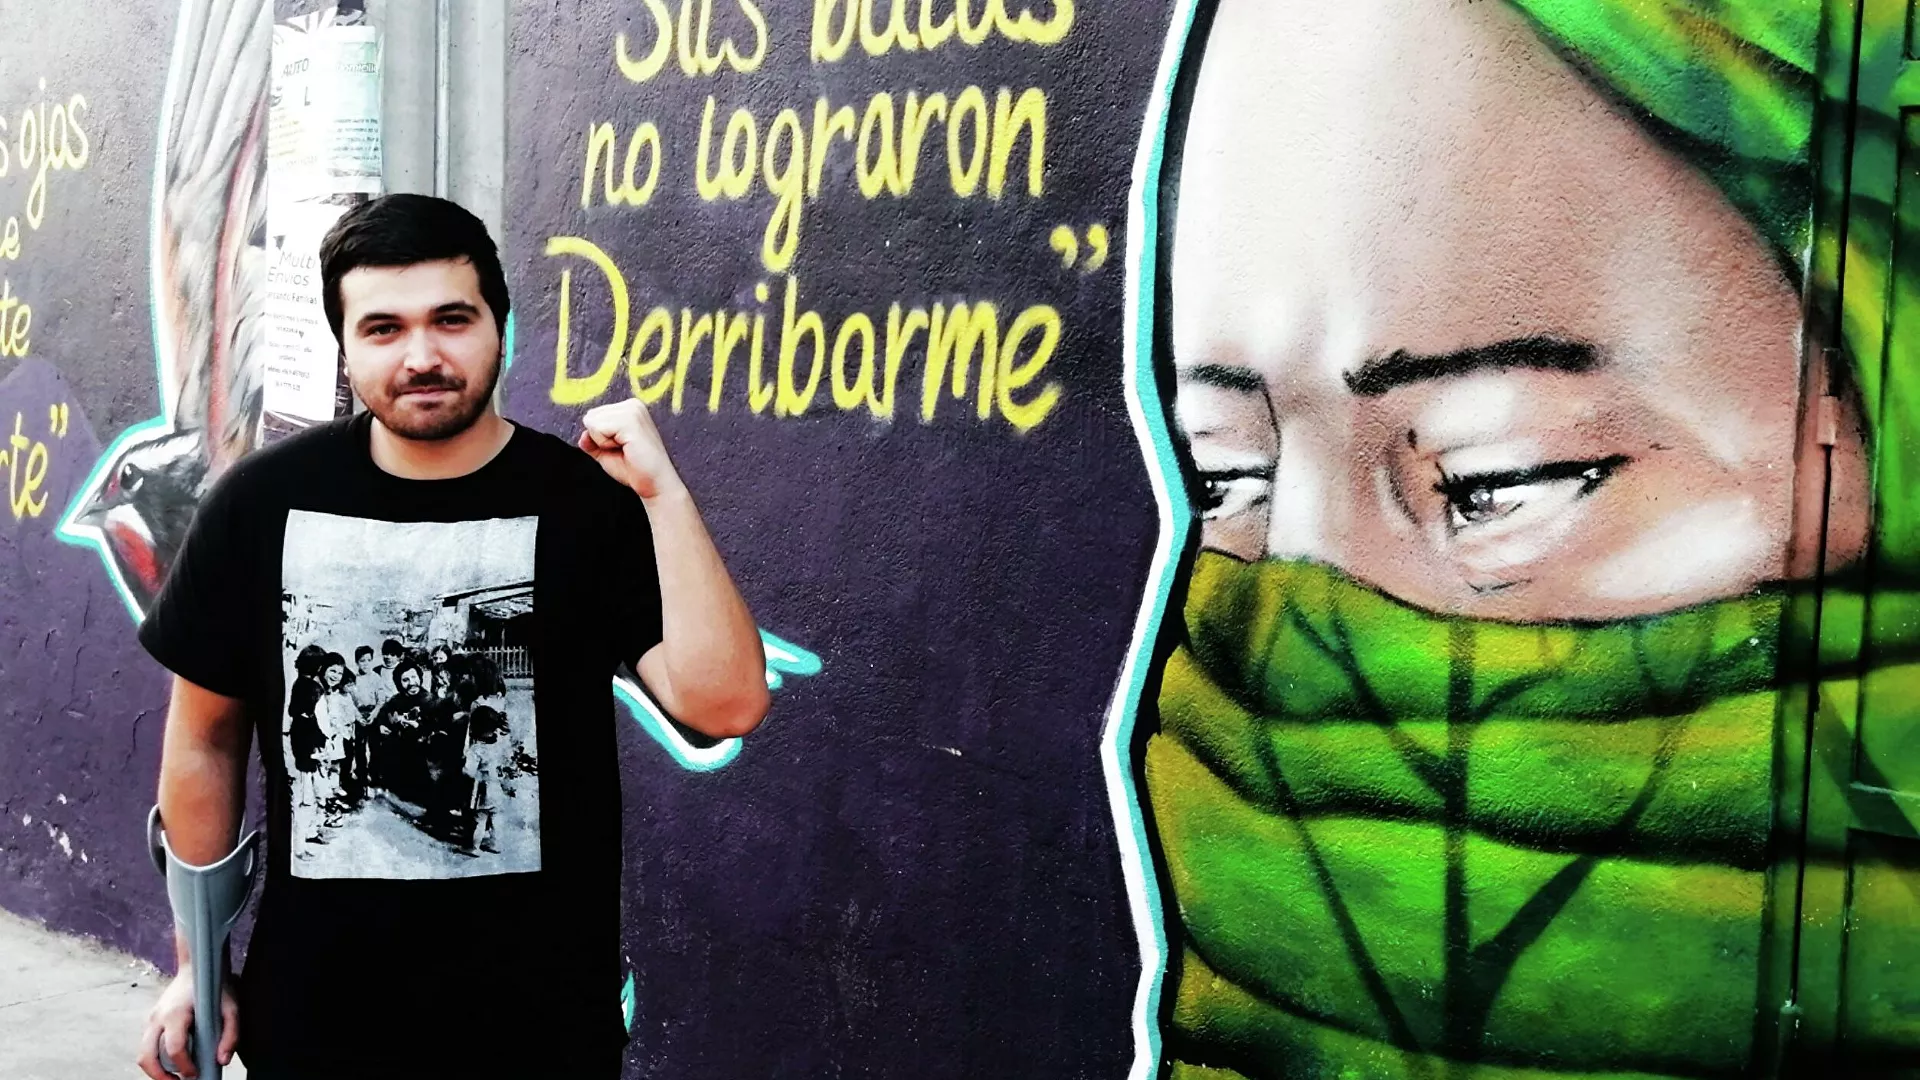  Baleados y atropellados en el estallido: víctimas de militares esperan justicia en Chile